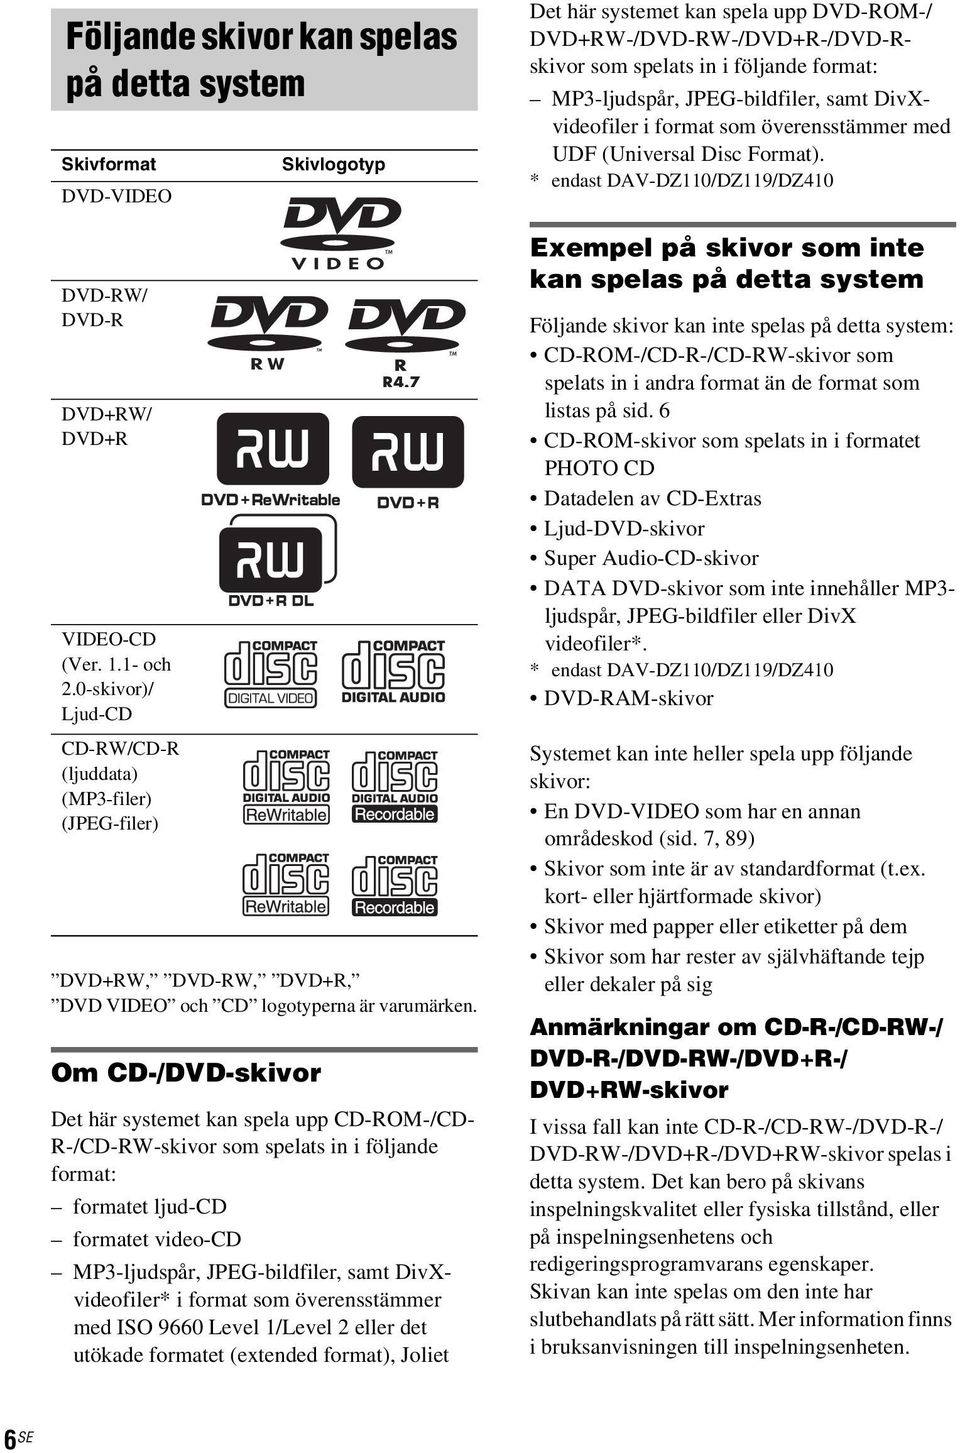 Om CD-/DVD-skivor Skivlogotyp Det här systemet kan spela upp CD-ROM-/CD- R-/CD-RW-skivor som spelats in i följande format: formatet ljud-cd formatet video-cd MP3-ljudspår, JPEG-bildfiler, samt